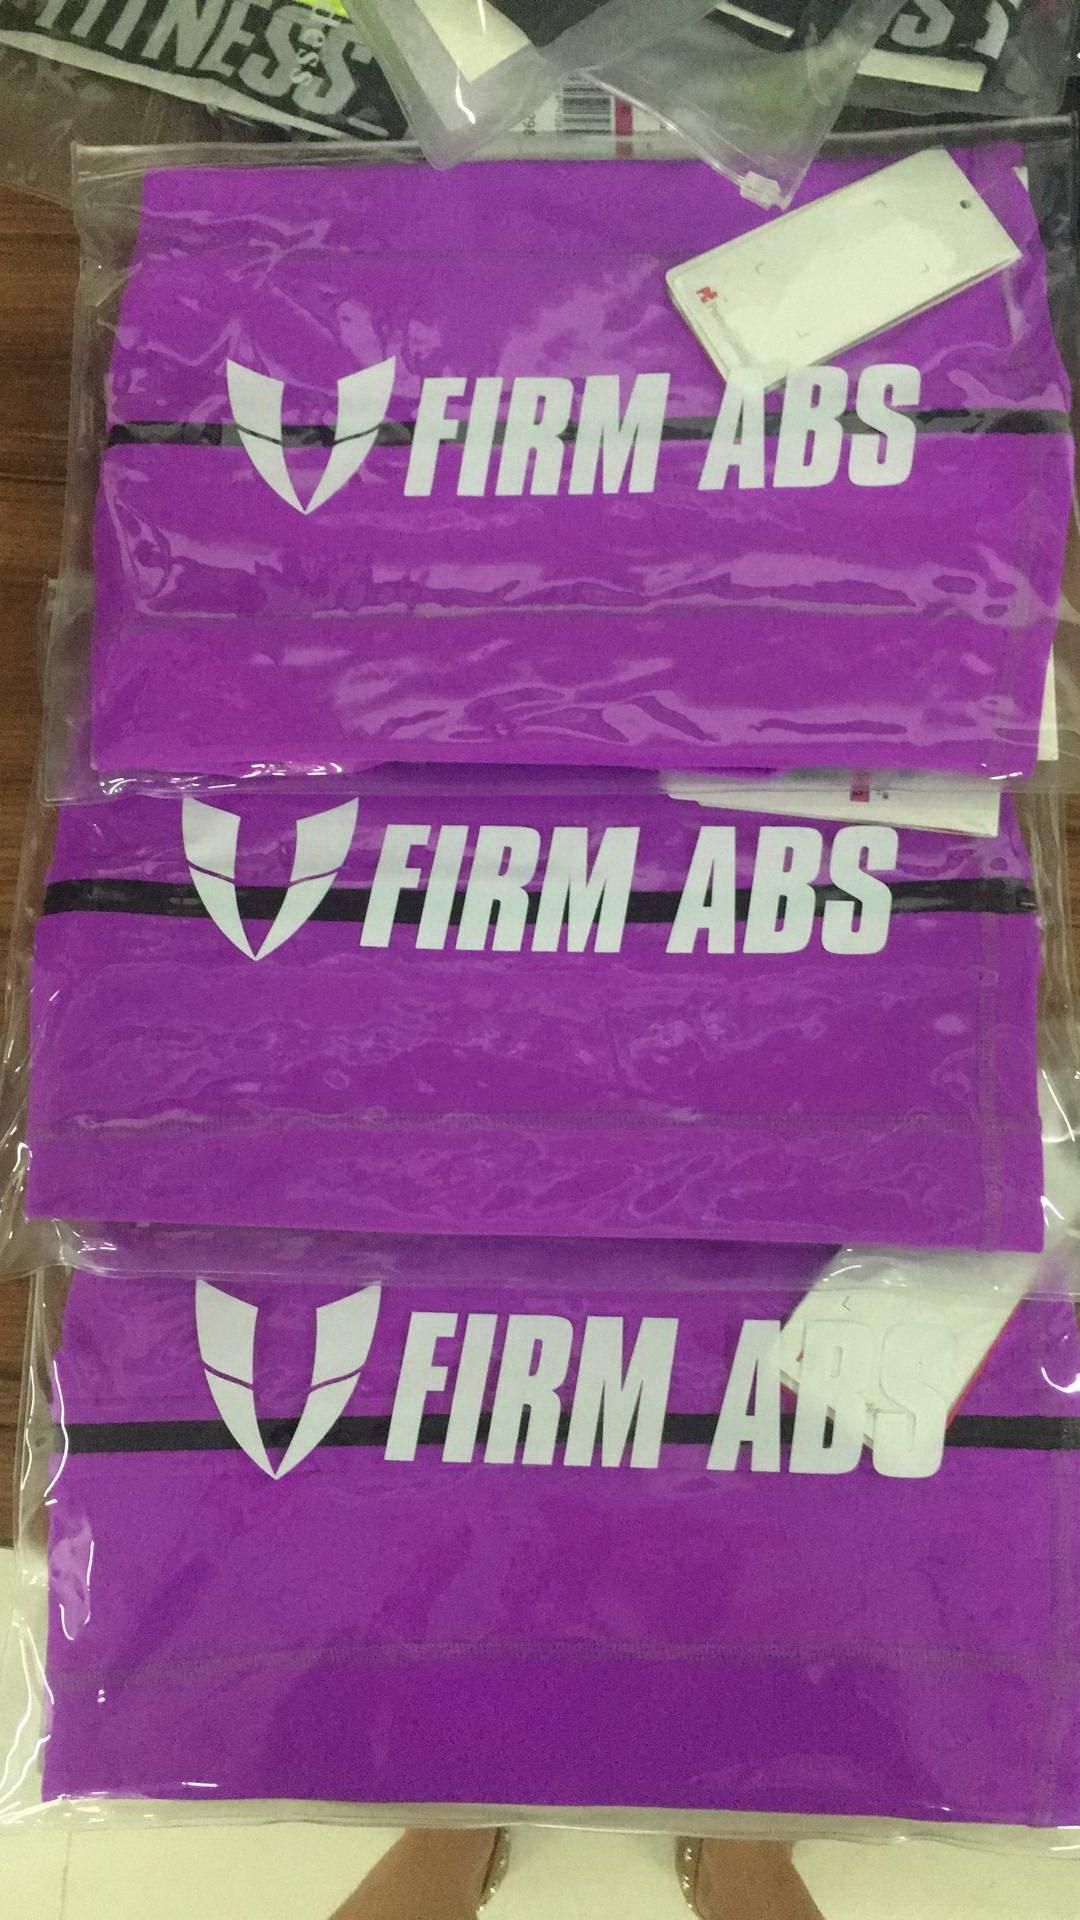 FIRM ABS - Dongguan FIRM ABS Sportswear CO.,Ltd. Trademark